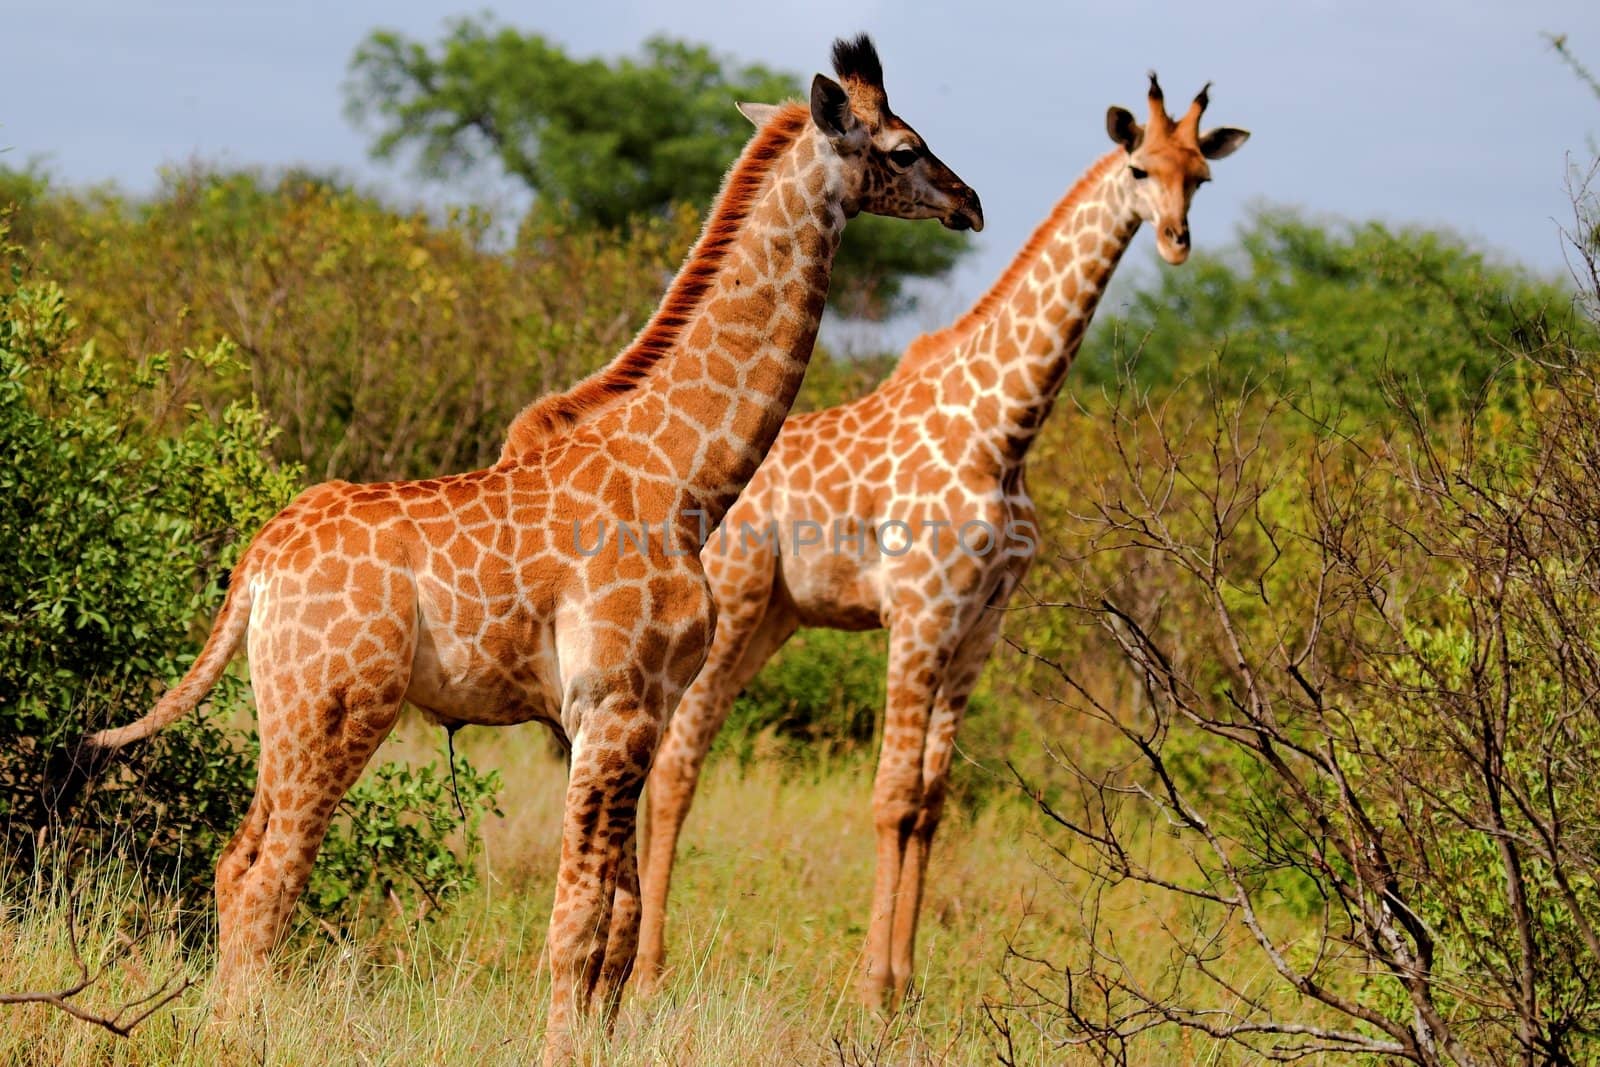 Giraffe in the African Bush by nightowlza